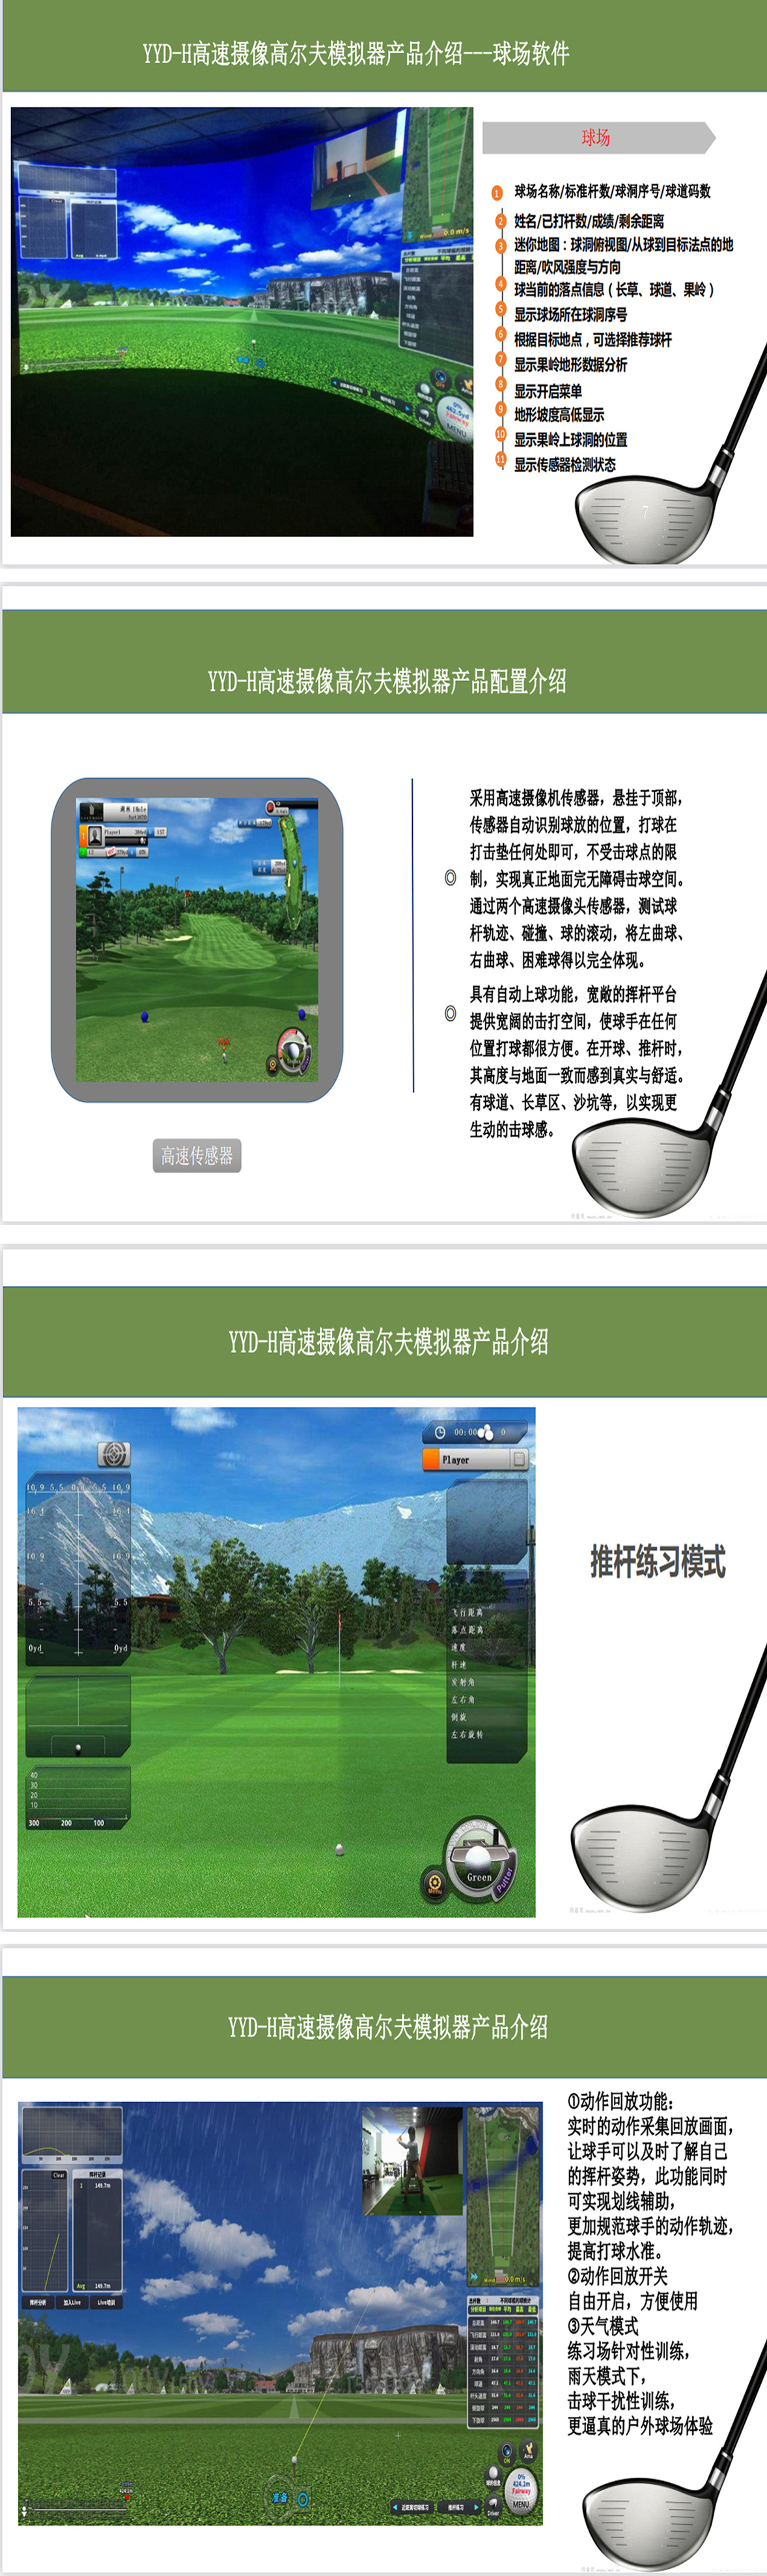 智能室内高尔夫设备 01.jpg